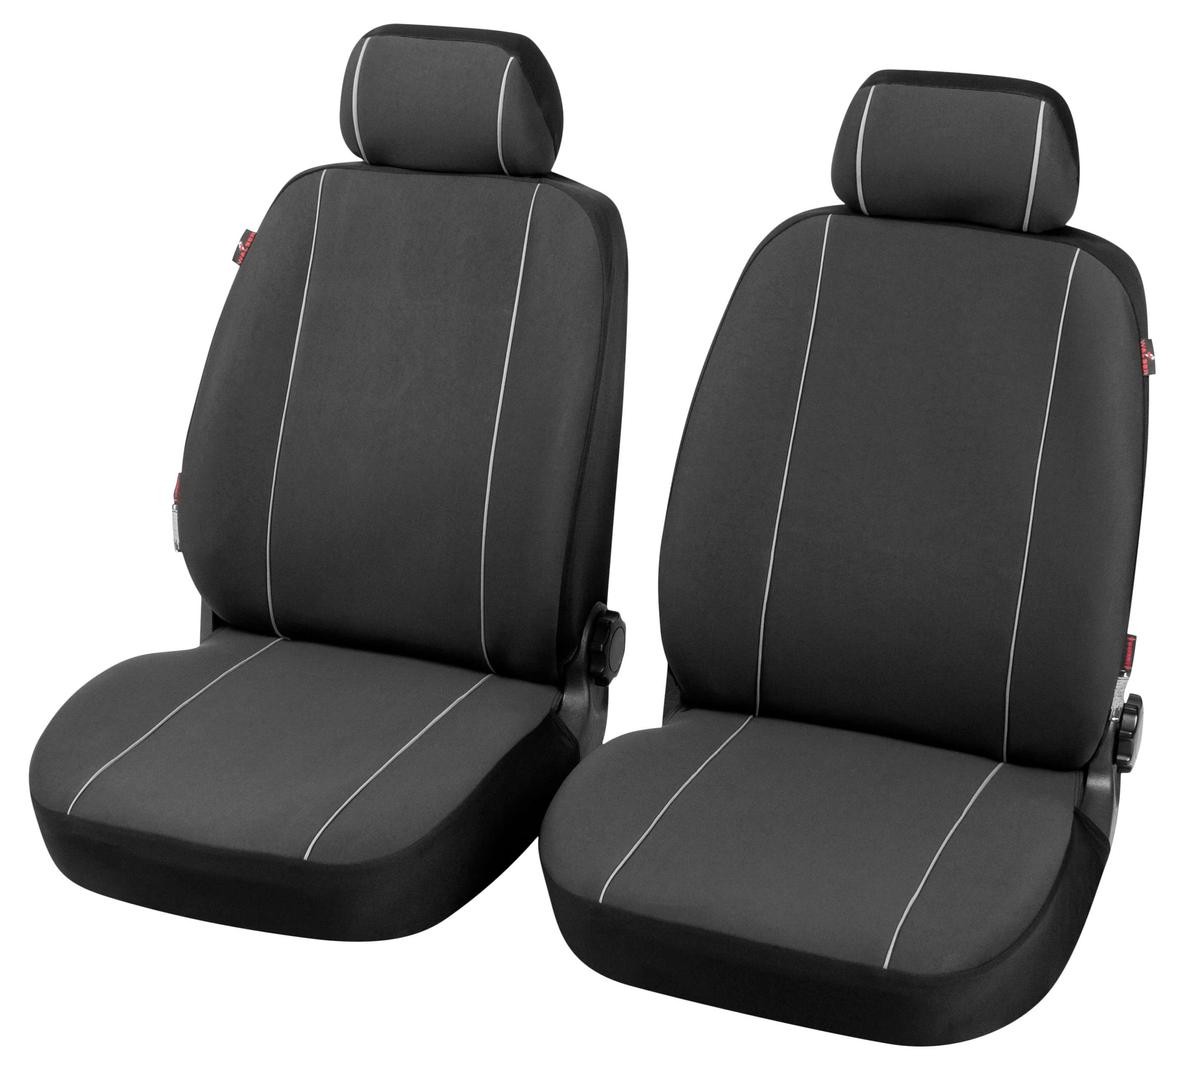 Sitzbezüge für VW Corrado günstig bestellen